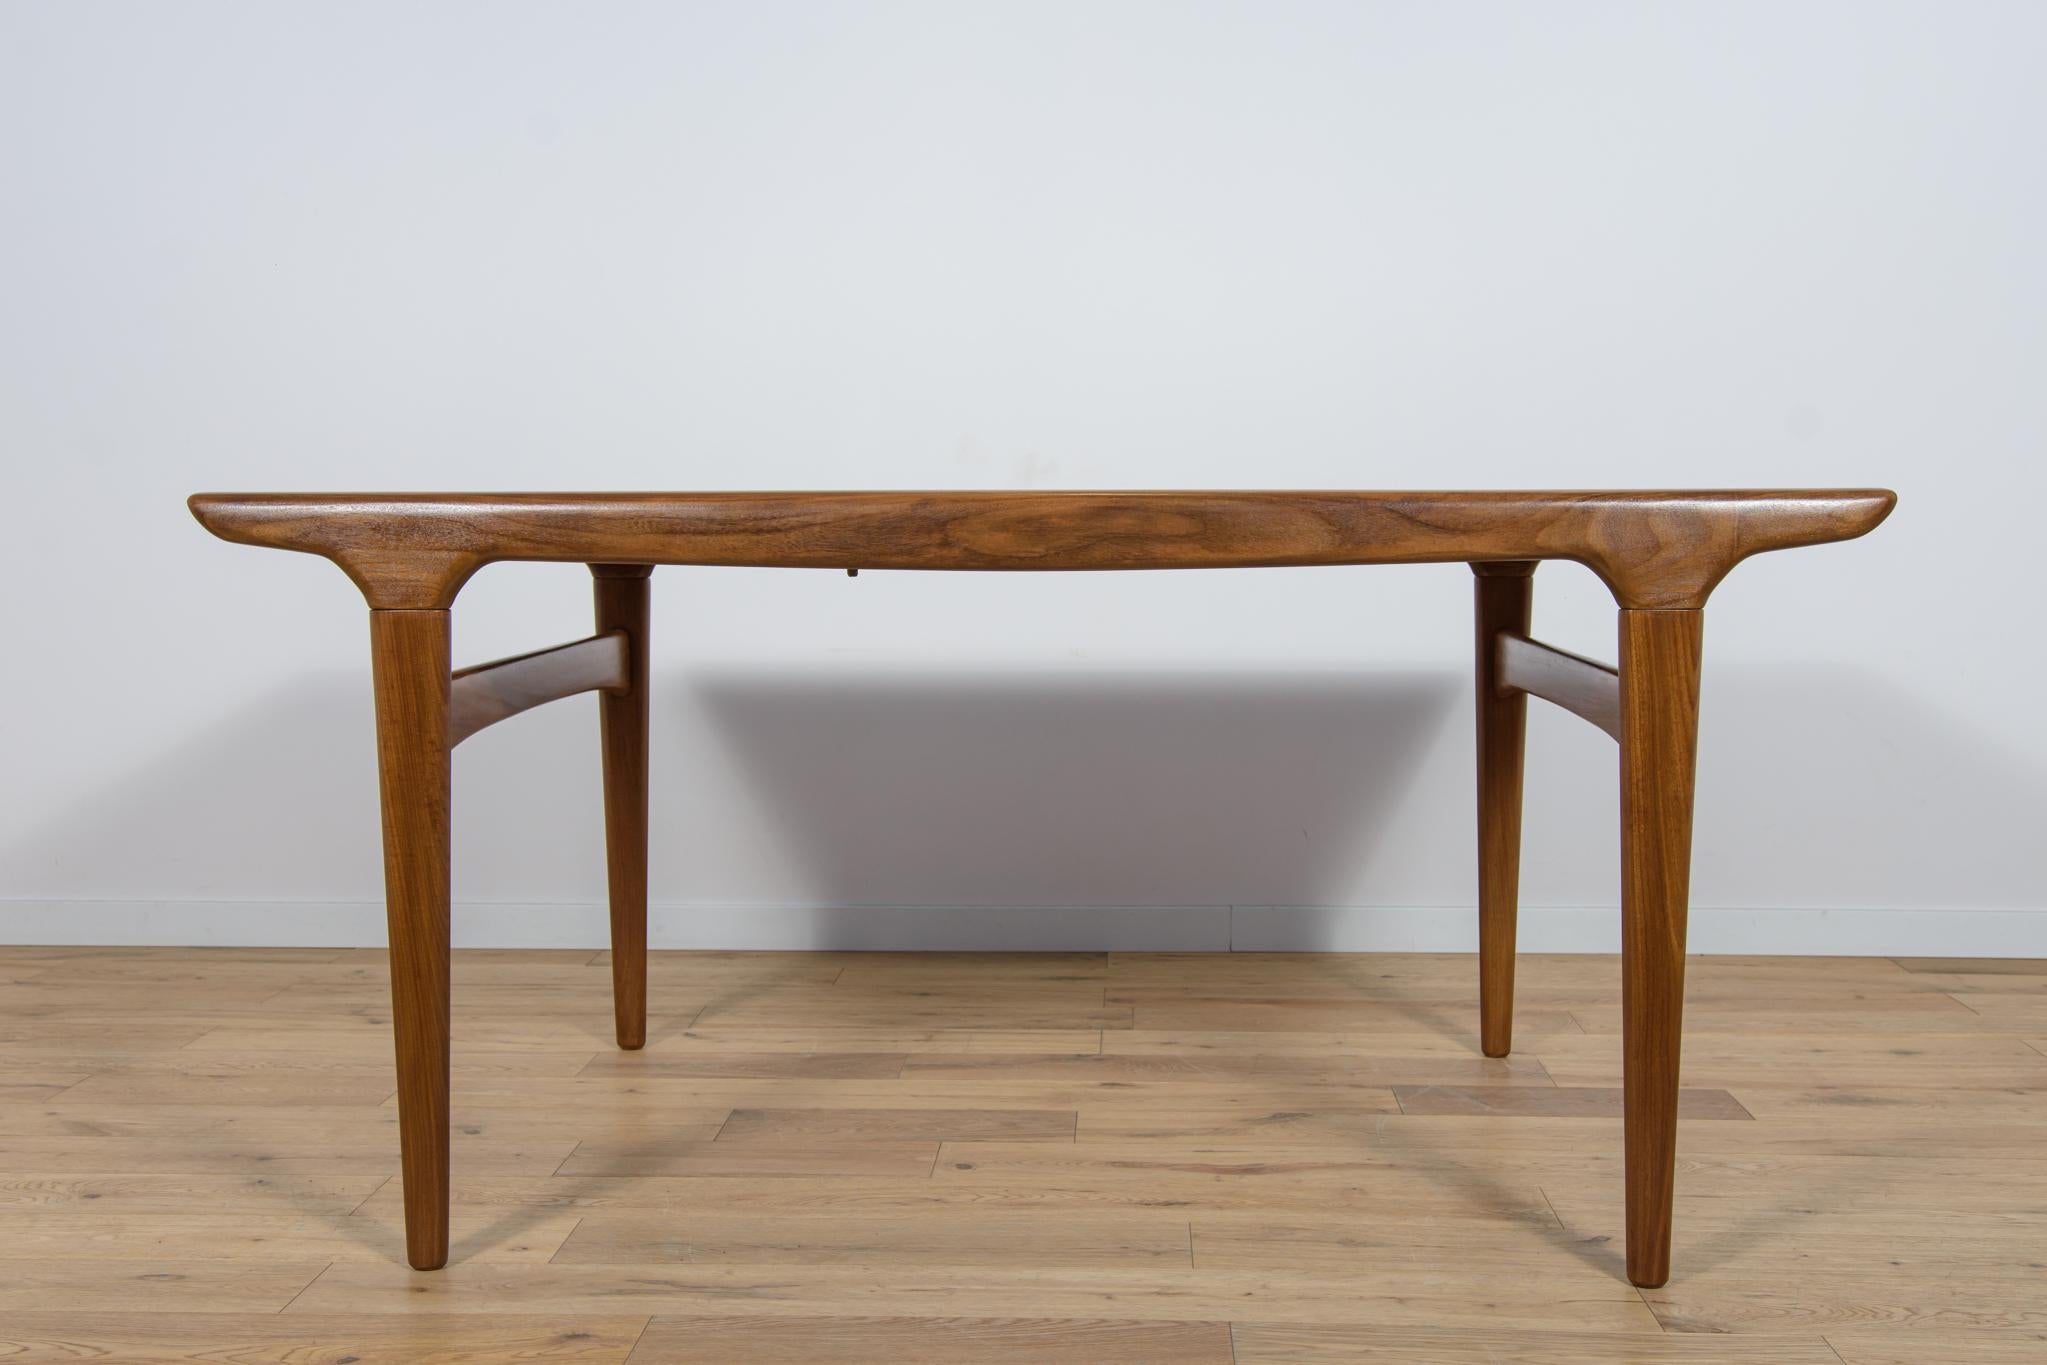 
La table à rallonge en bois de teck conçue dans les années 1960 par Johannes Andersen pour le fabricant danois Uldum Mobelfabrik. Cette table à la forme légère et sublime est dotée d'une rallonge qui permet d'allonger la table de 152 cm à 220 cm.